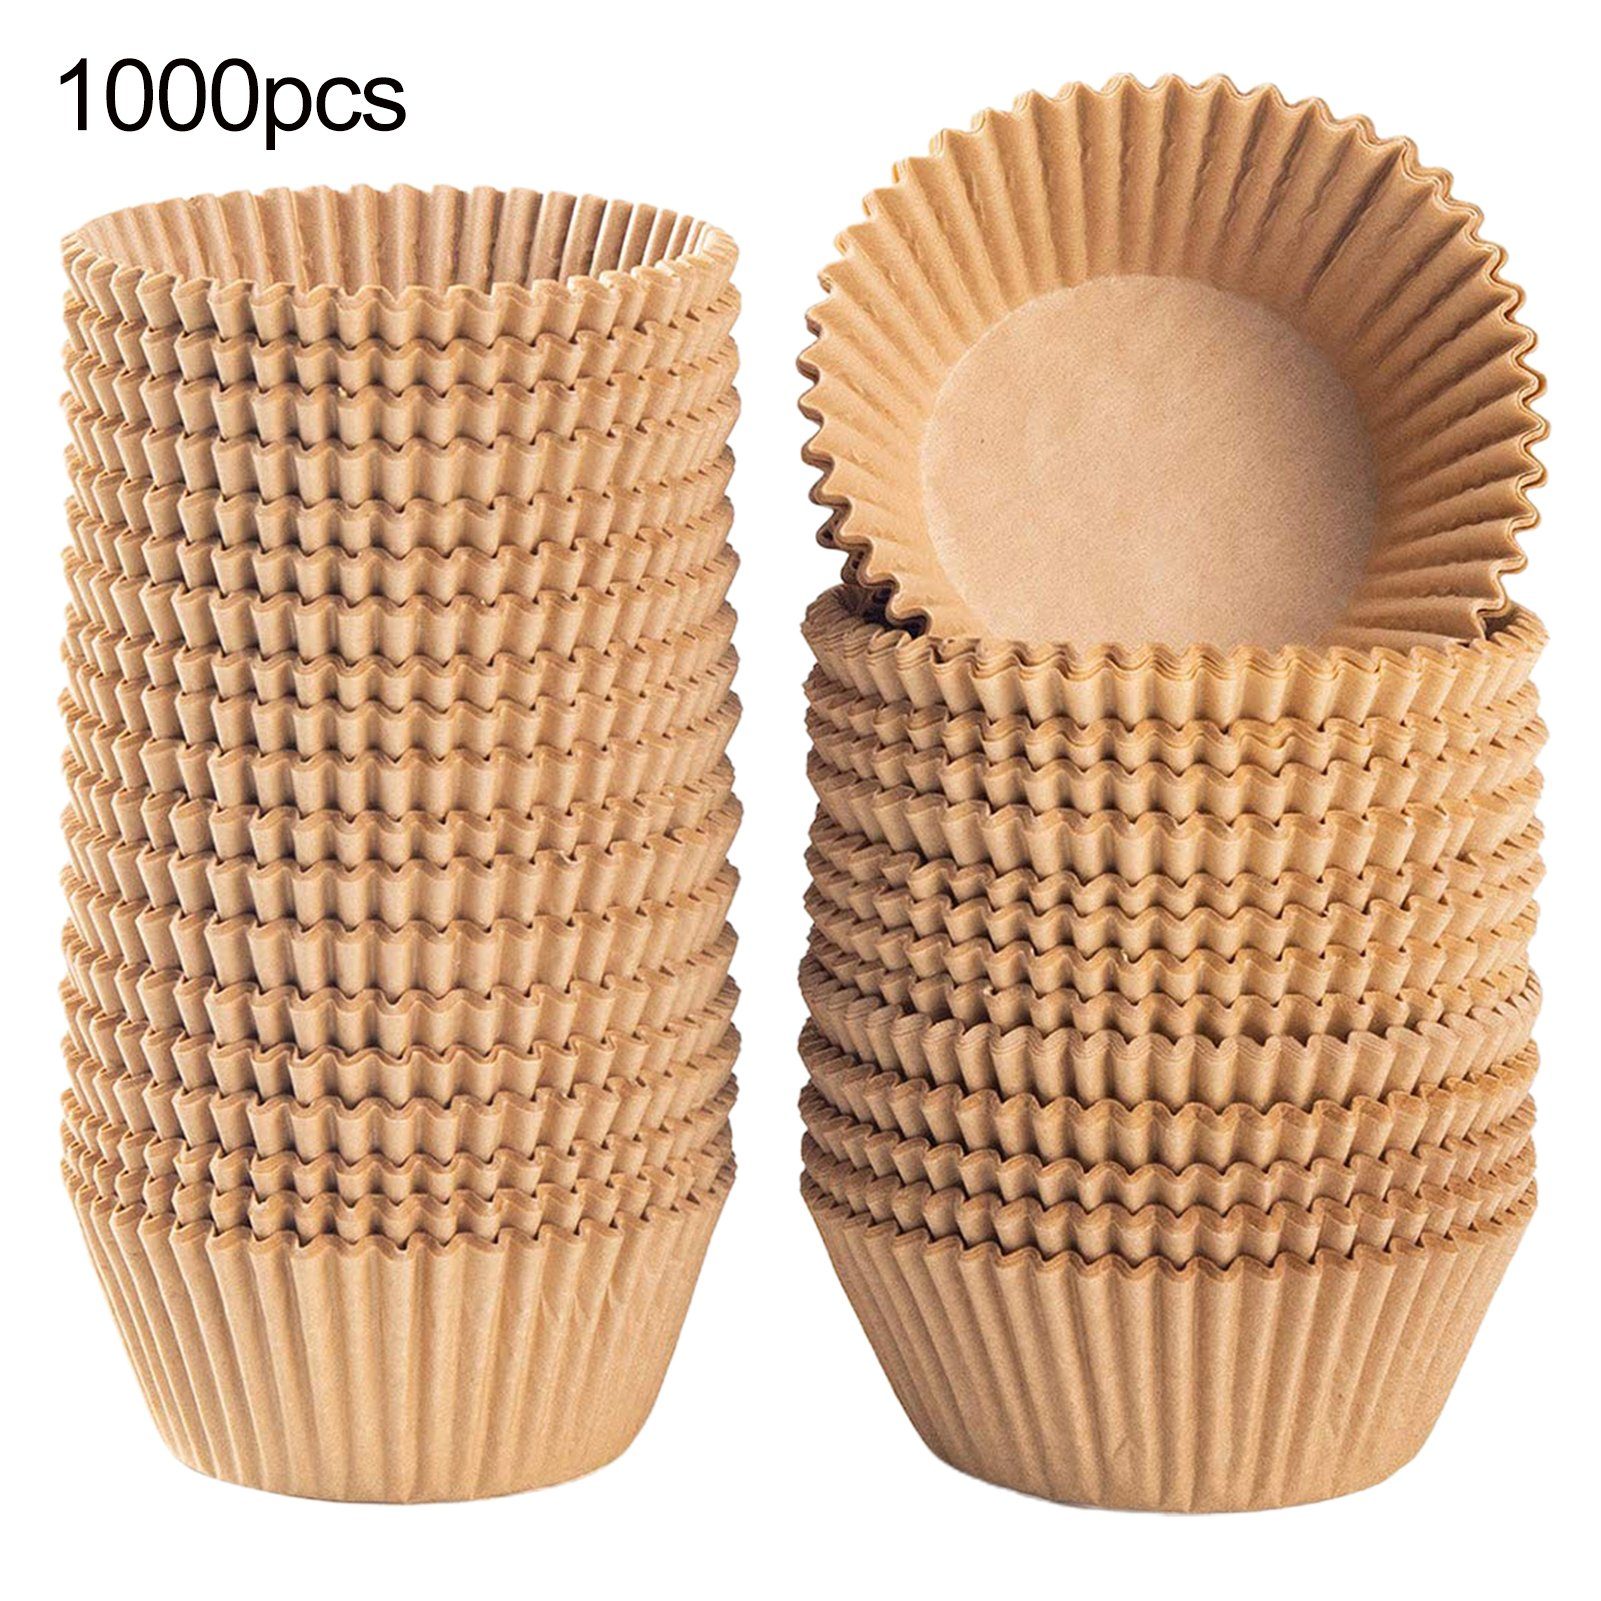 1000 Muffinförmchen, Stück Braun Papier Rutaqian Cupcake Formen Muffinform